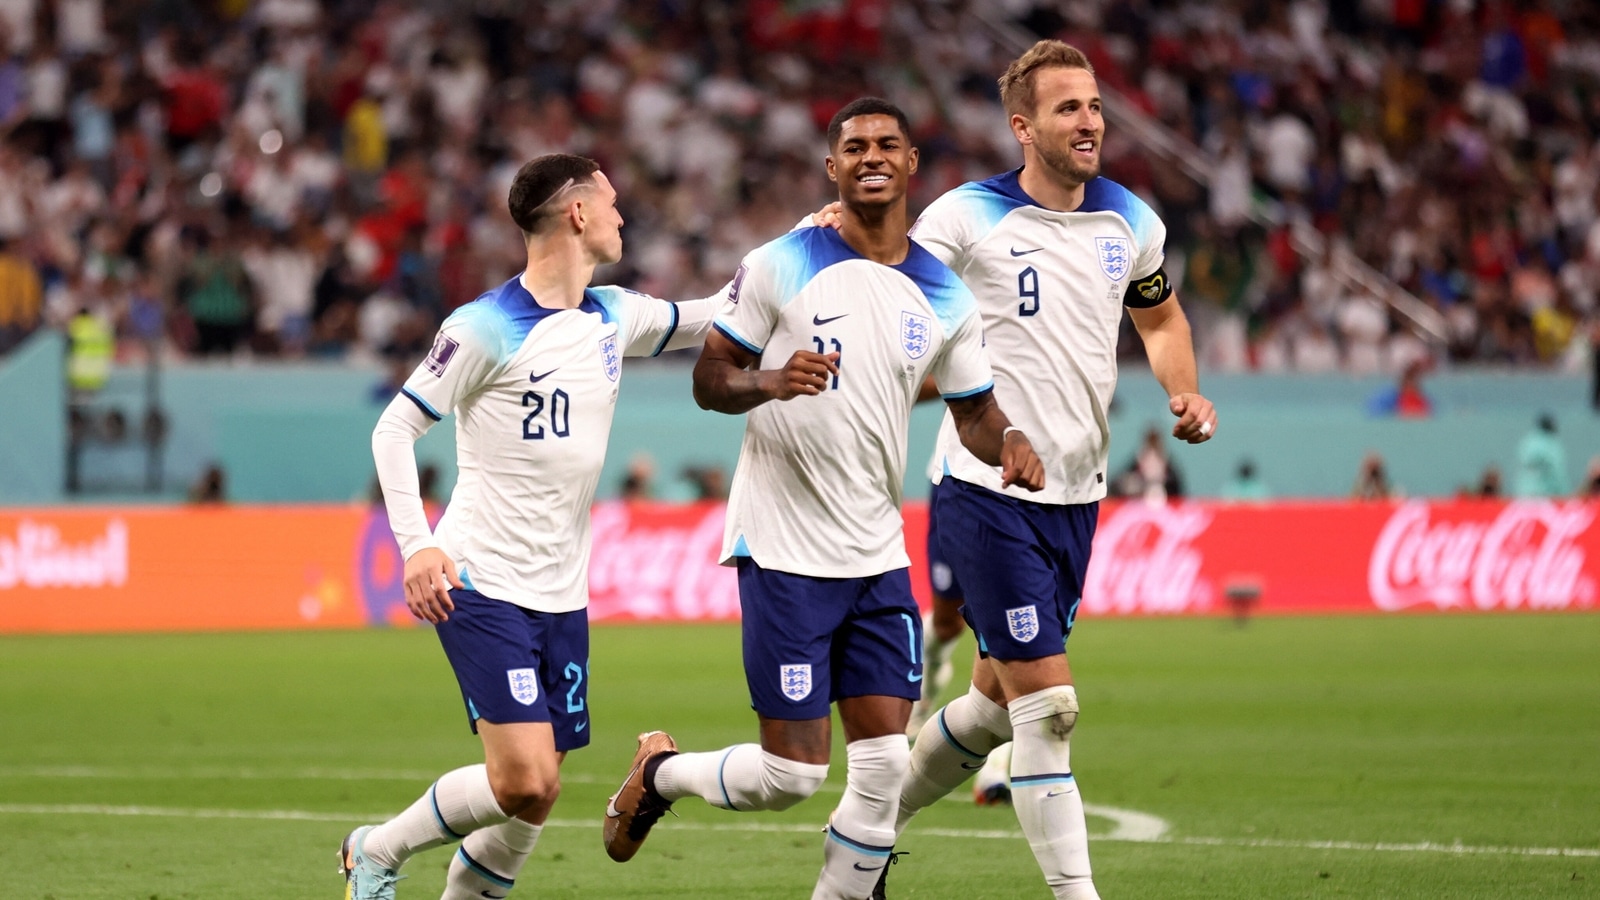 England vs USA, FIFA World Cup 2022 Highlights England, USA play out 0